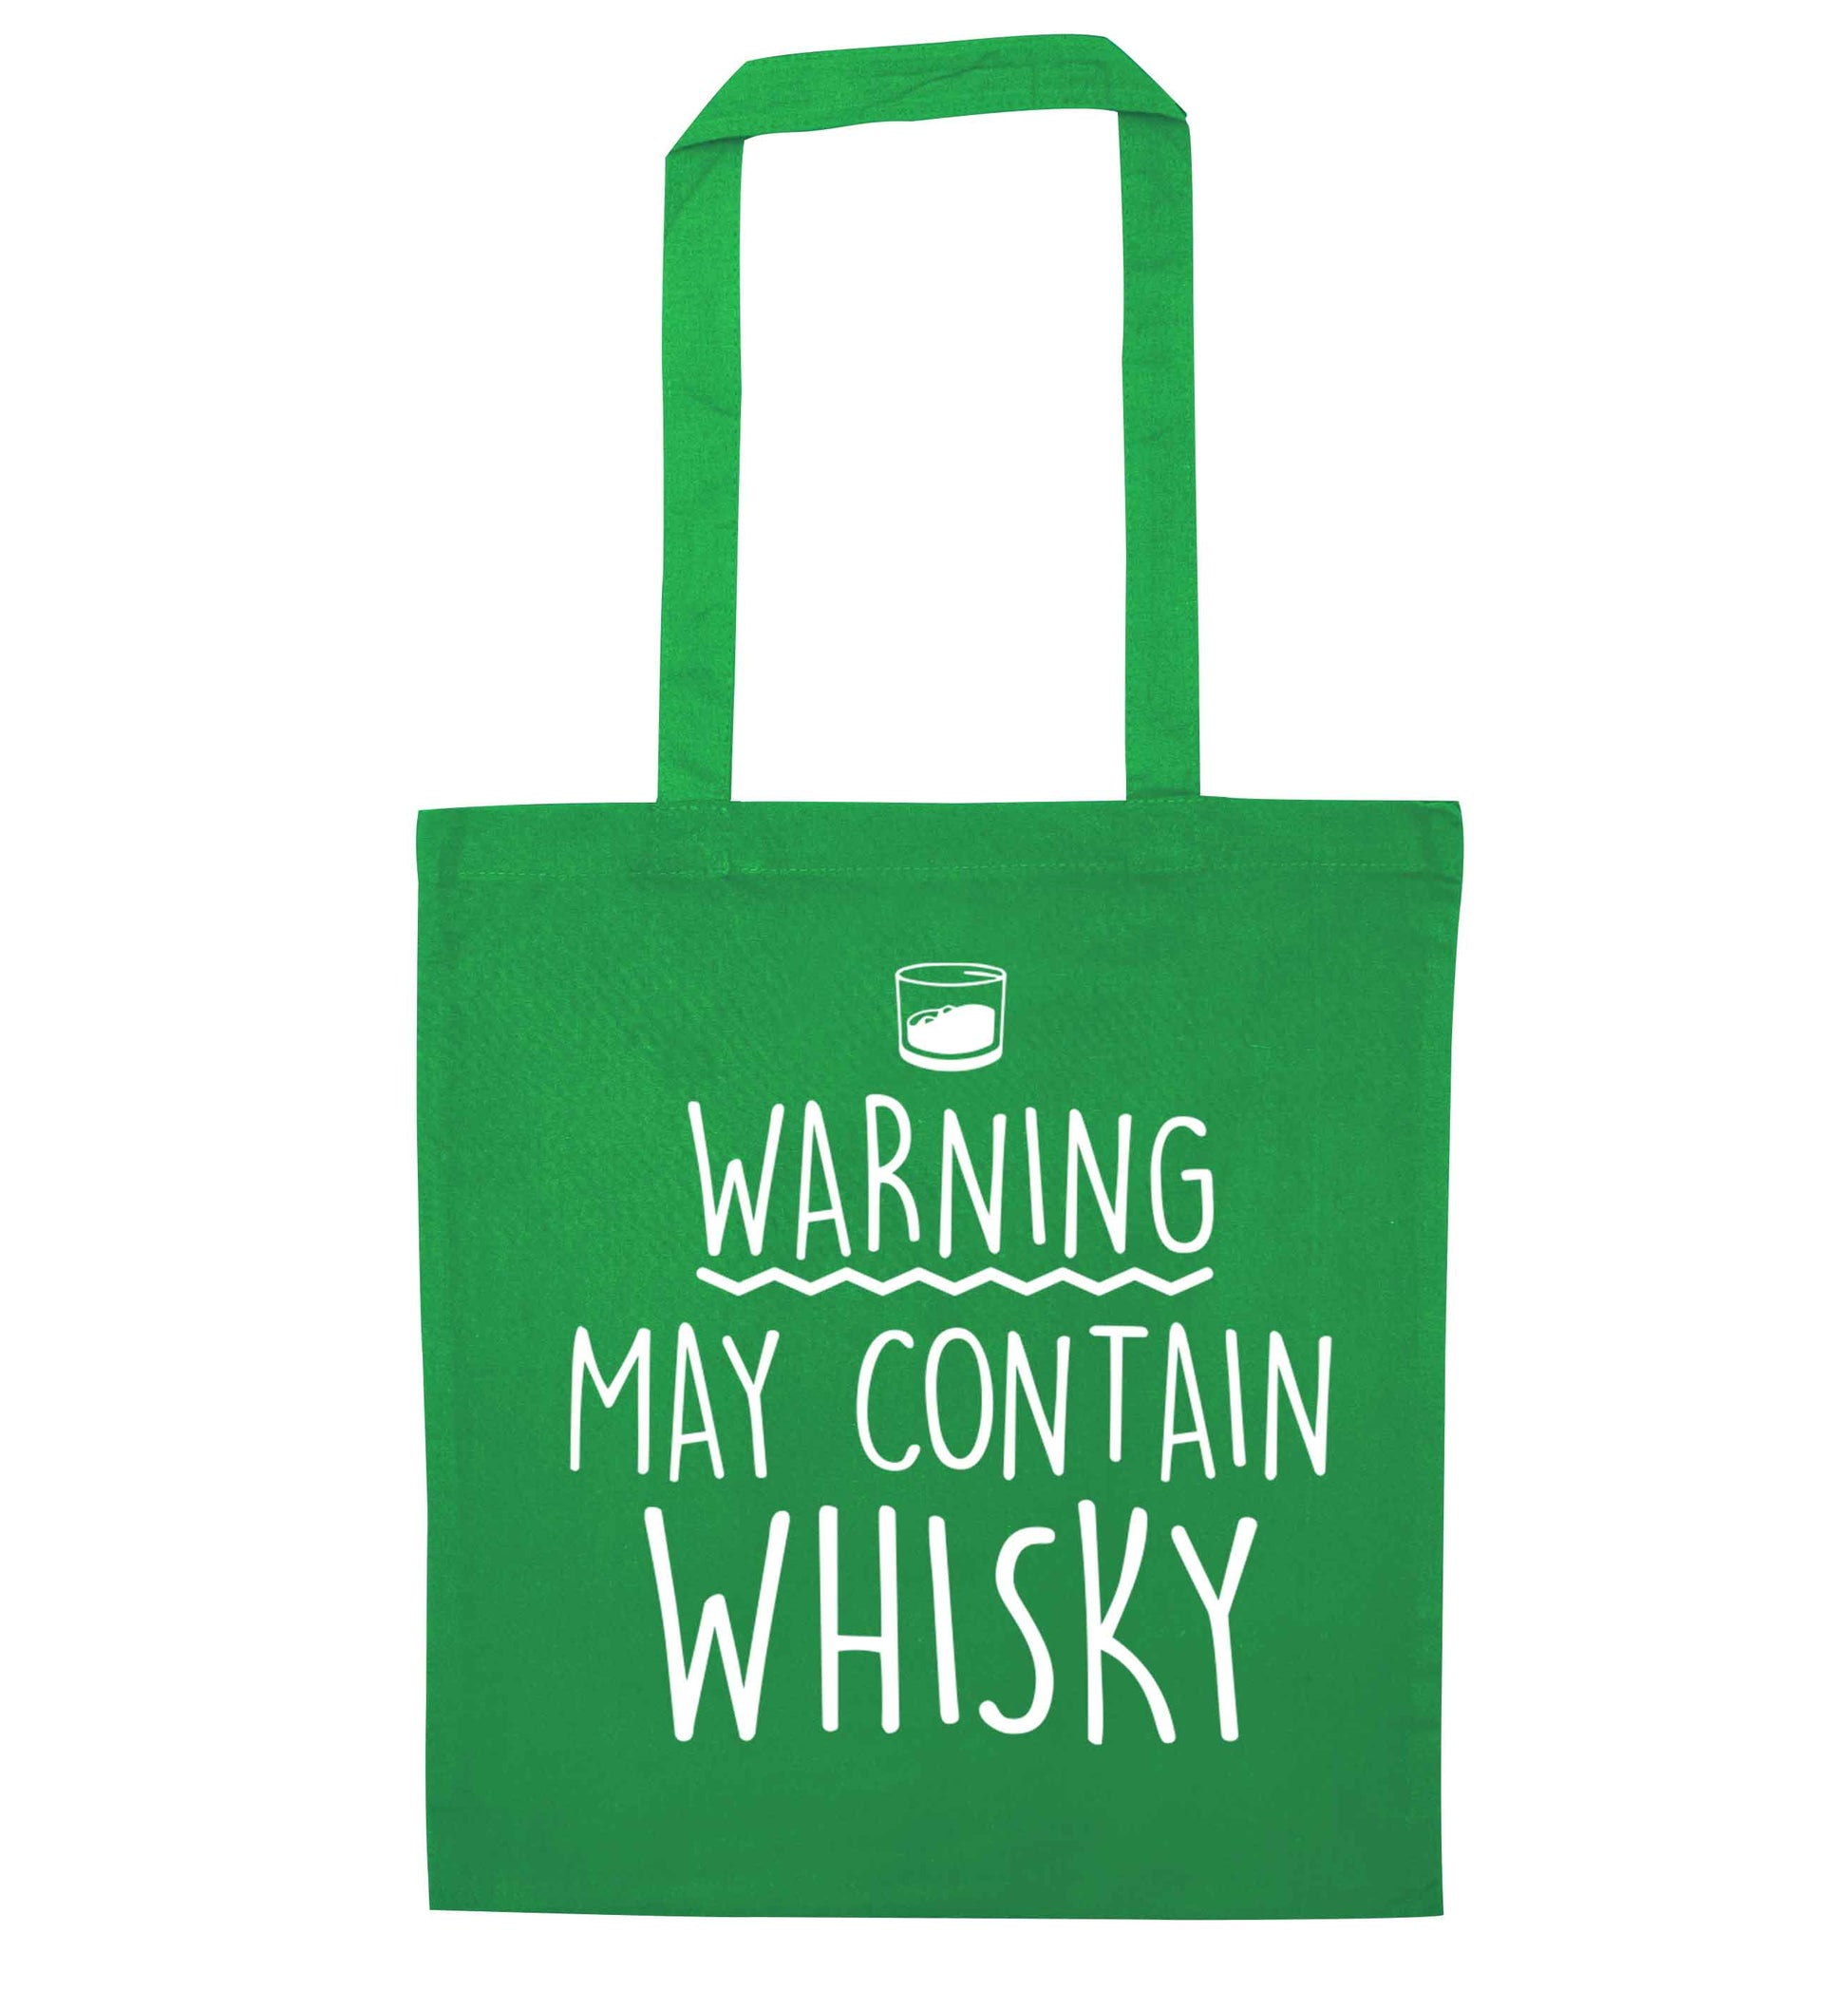 Warning may contain whisky green tote bag